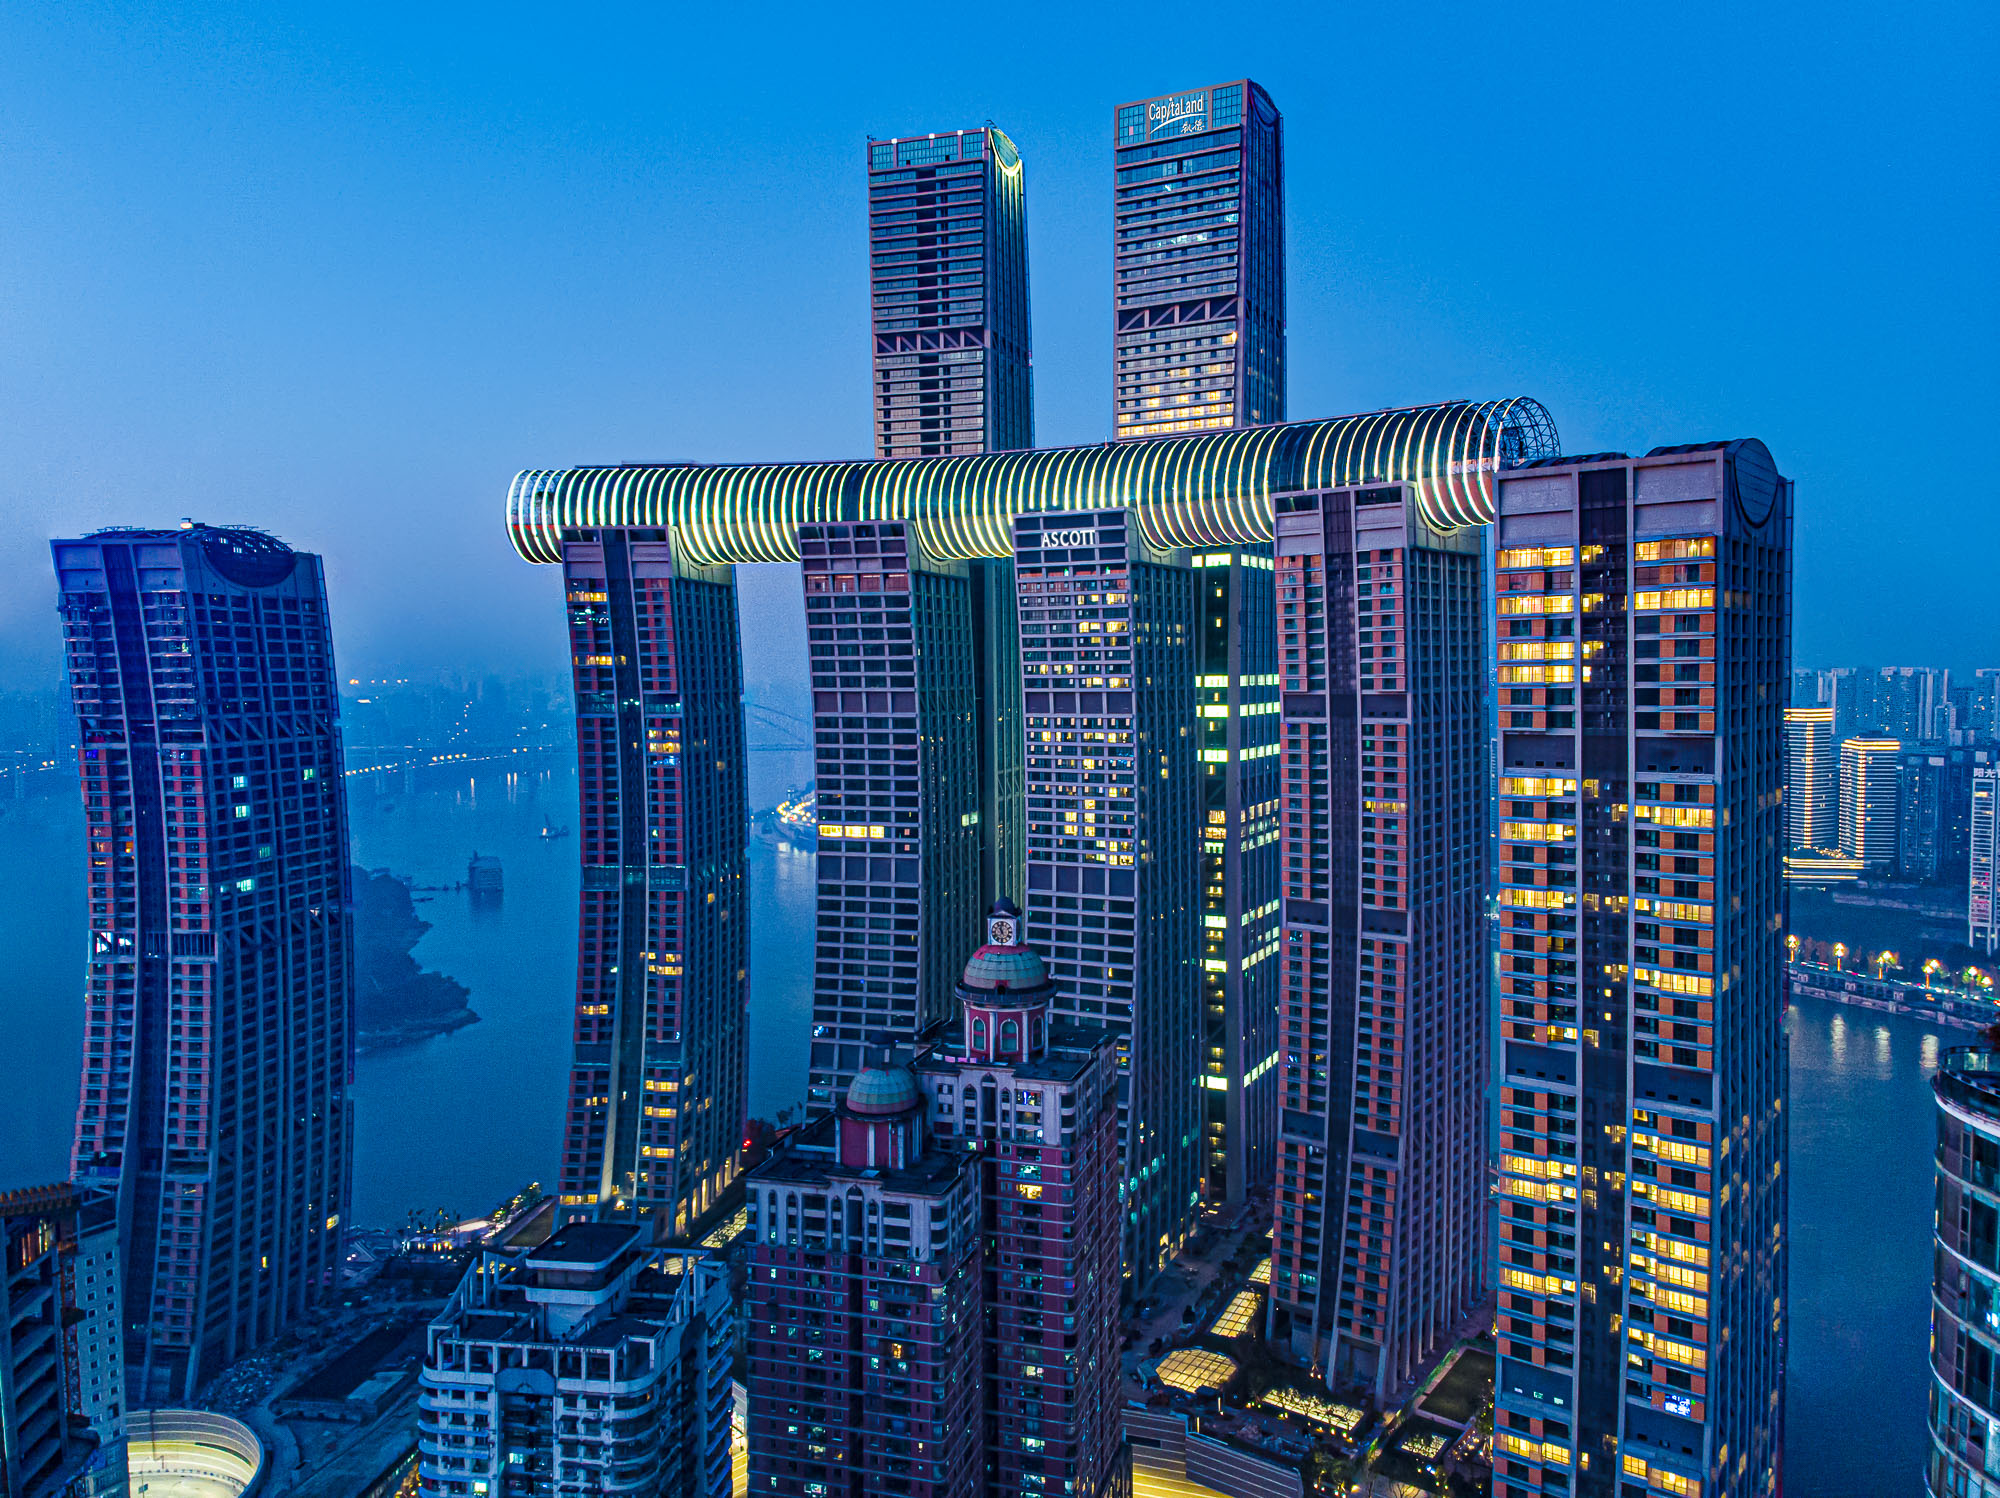 重庆横向摩天大楼火上热搜 这真的不是科幻片场景吗?